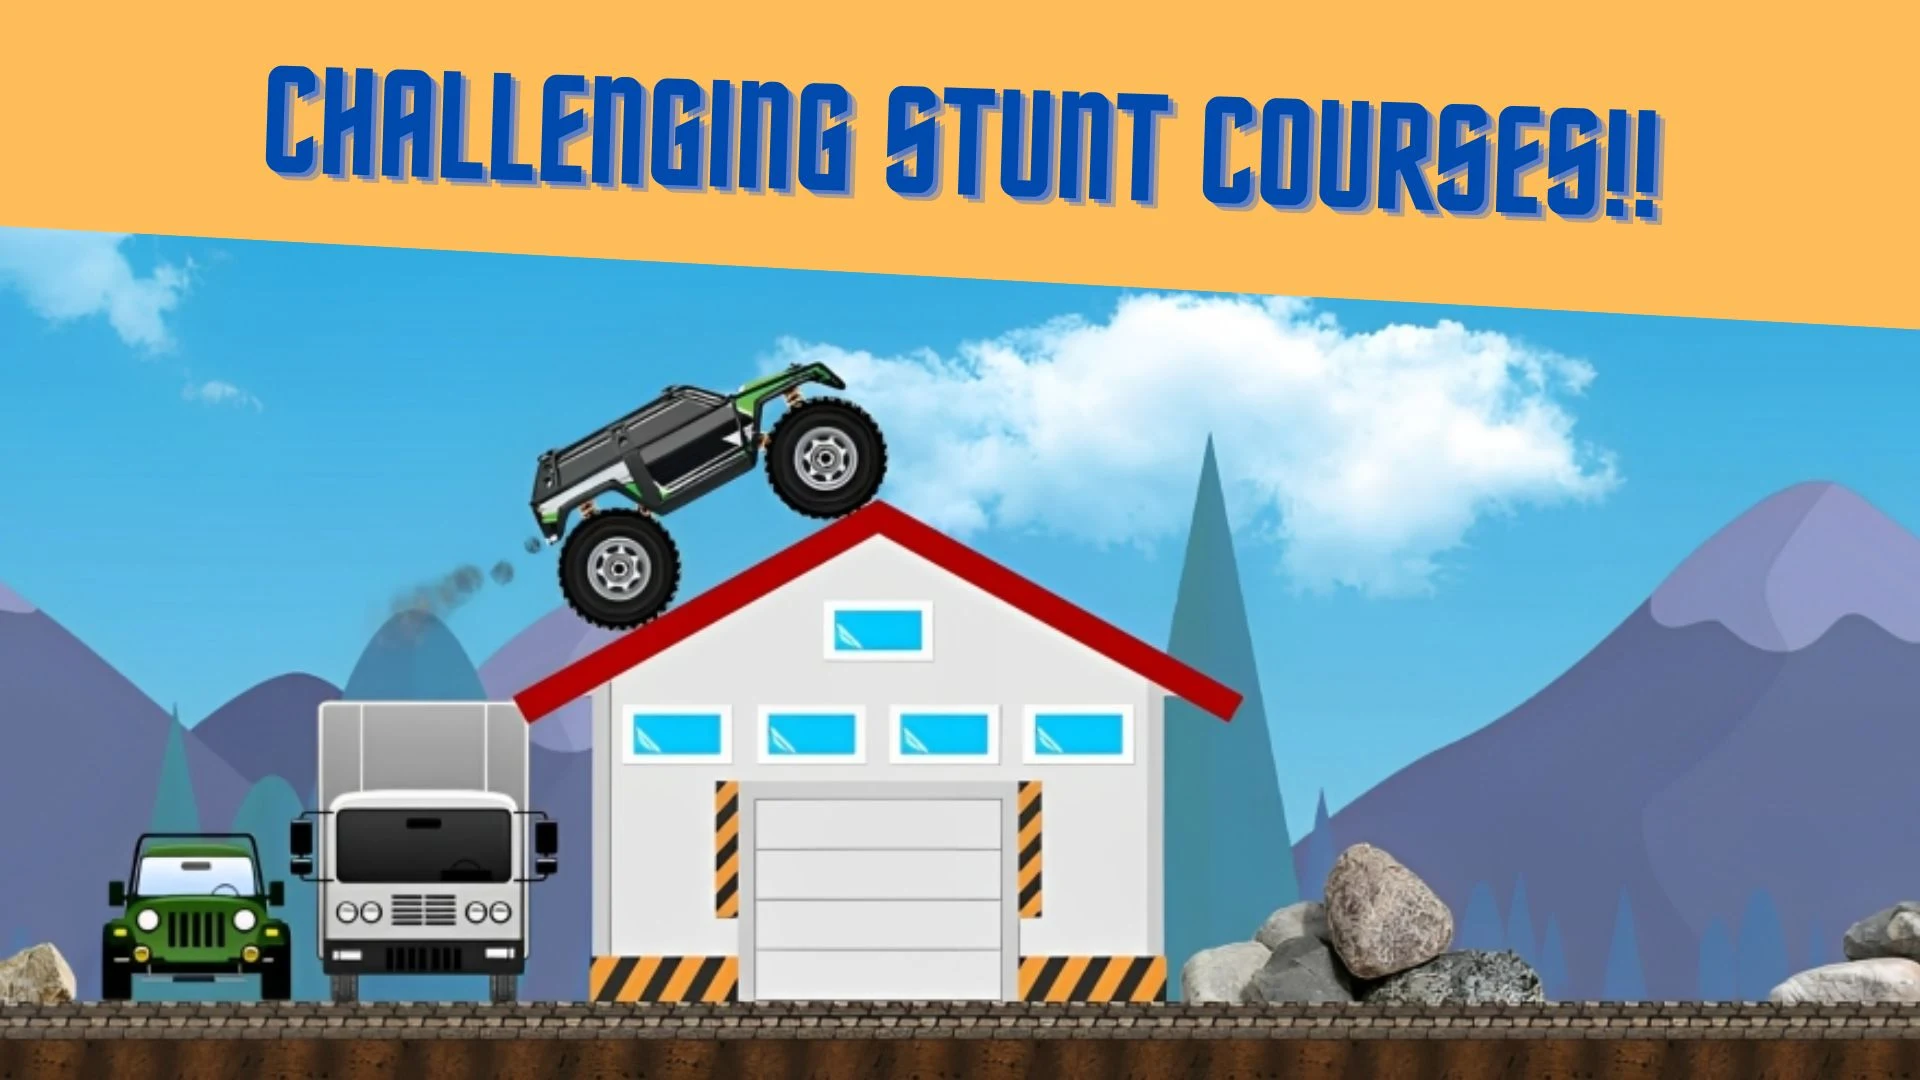 4x4 Monster Truck Stunt Race